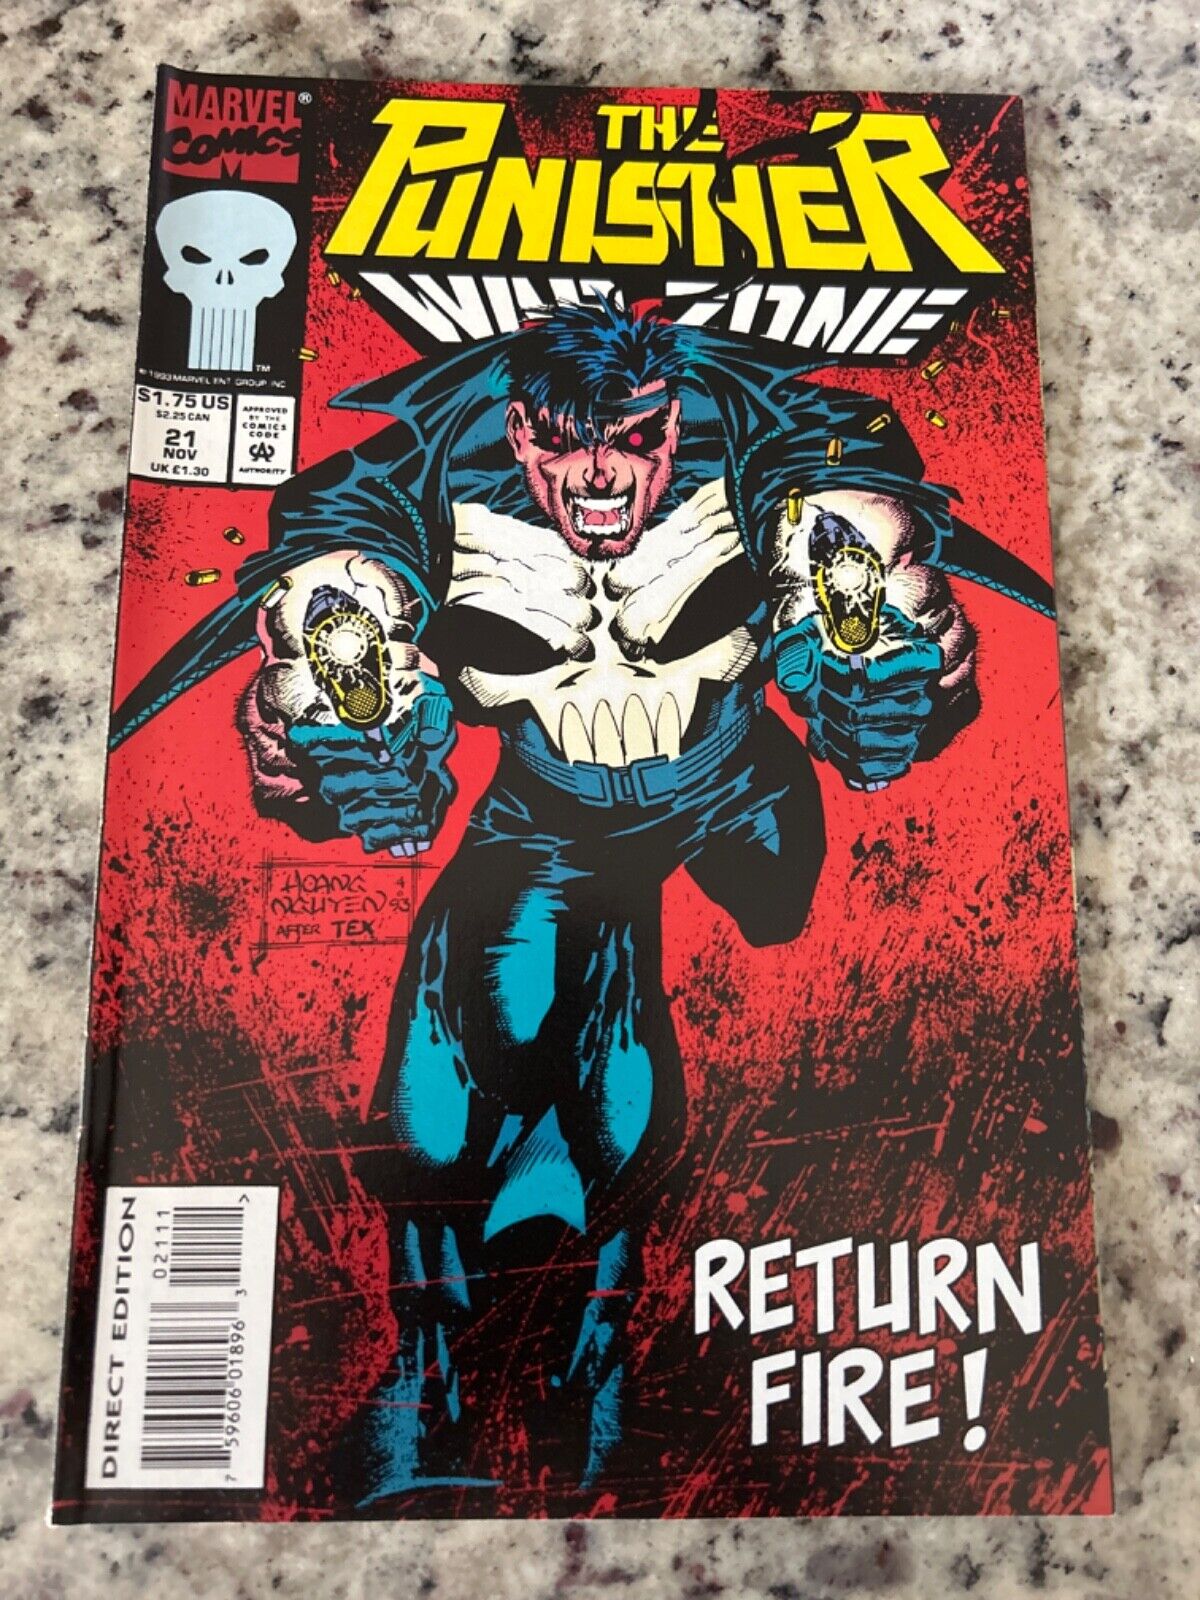 Punisher: War Zone #21 Vol. 1 (Marvel, 1993) ungraded